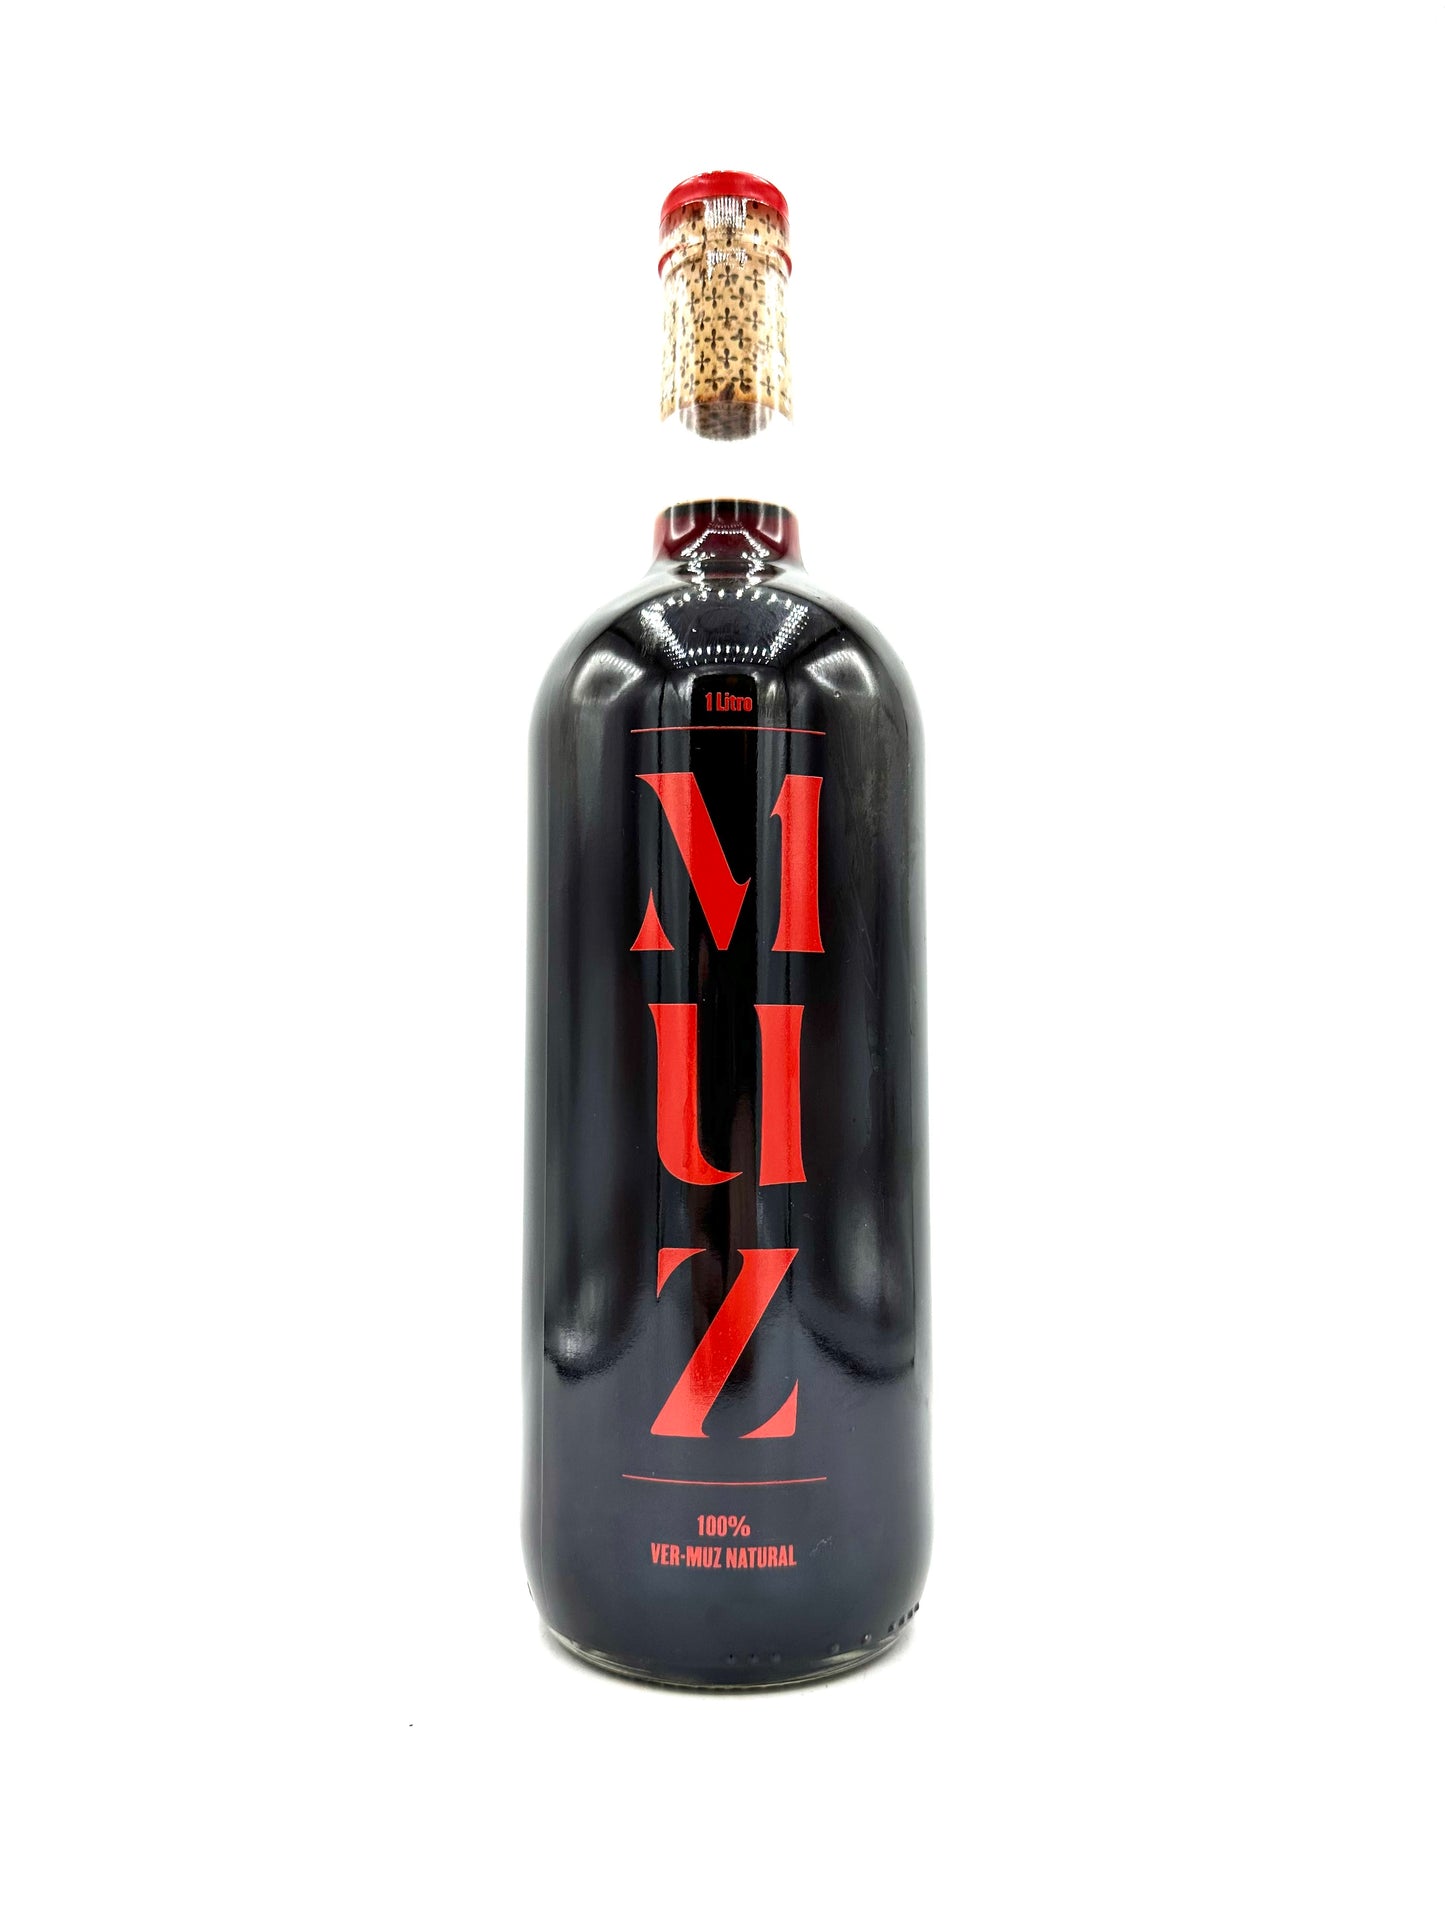 Partida Creus 'MUZ' Vermouth NV (1L)